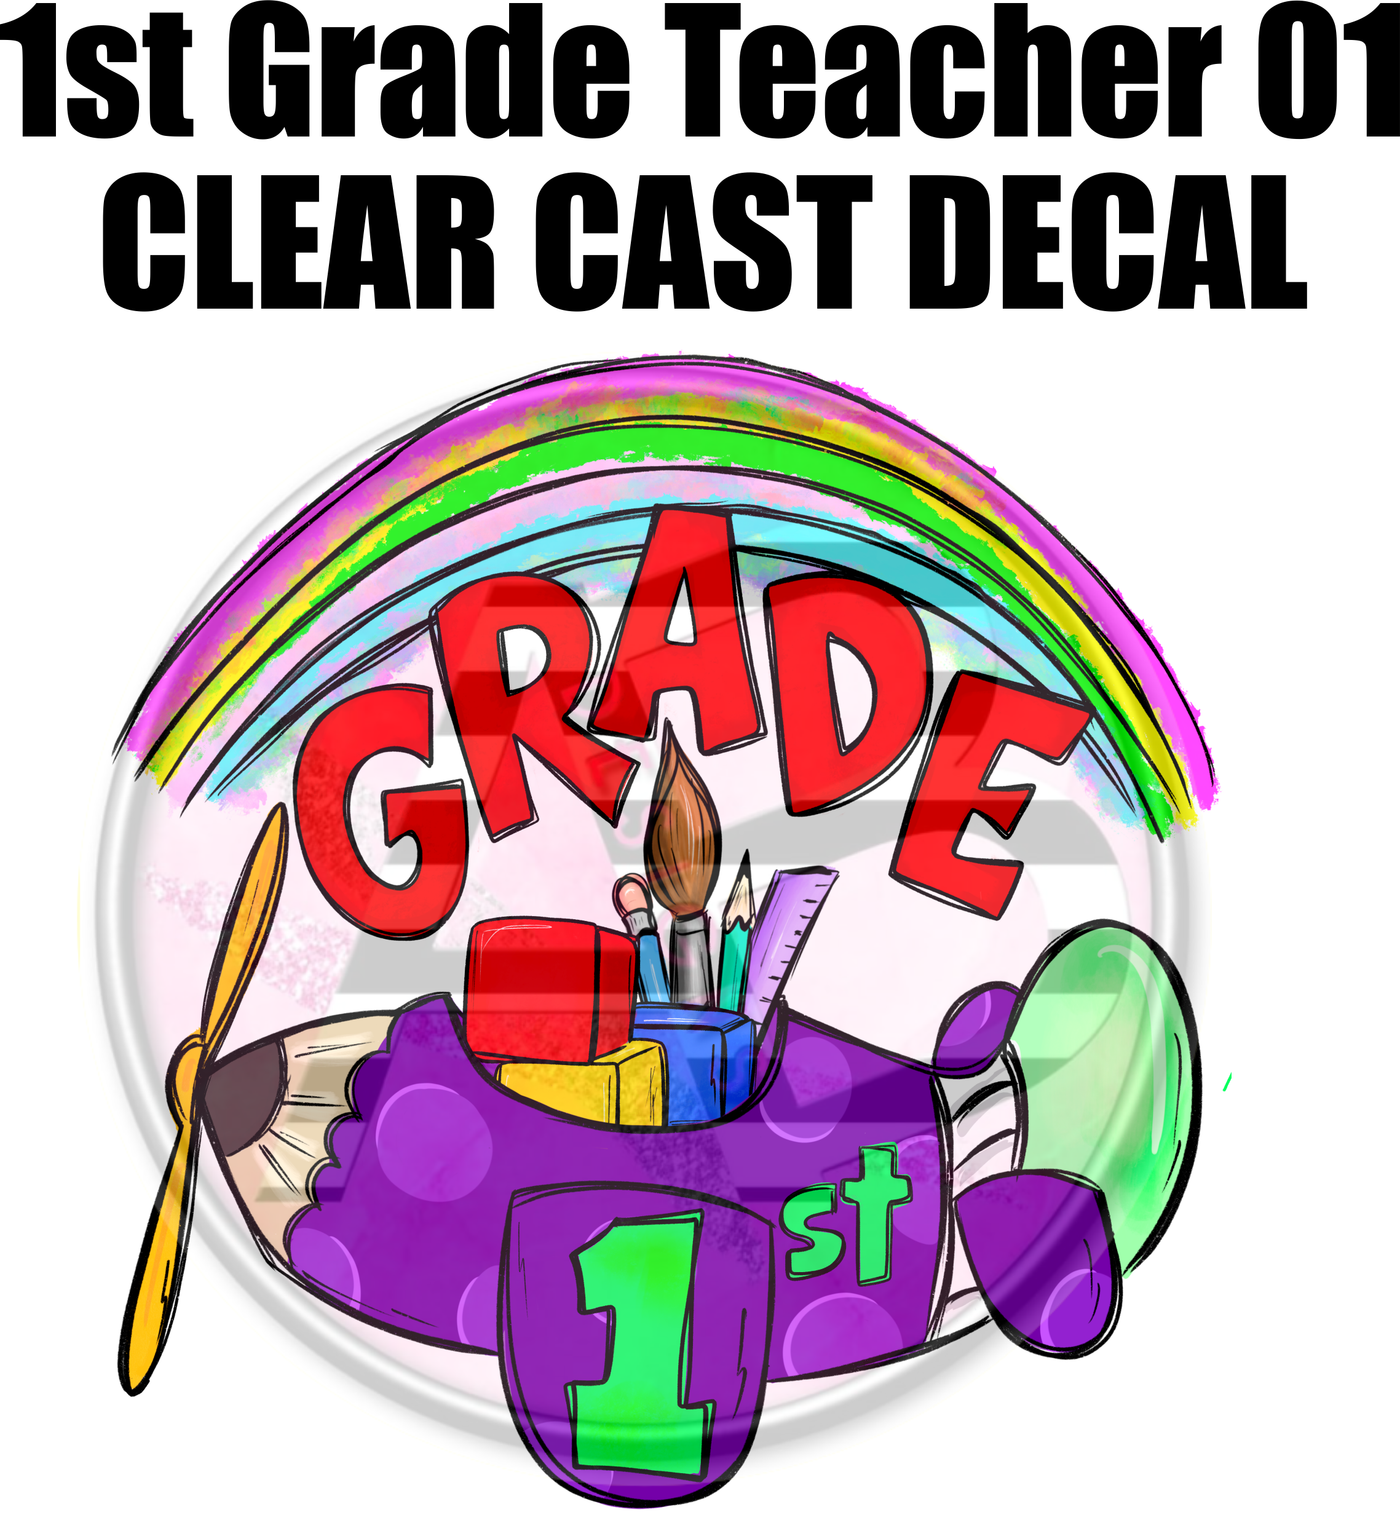 1st Grade Teacher 01 - Clear Cast Decal